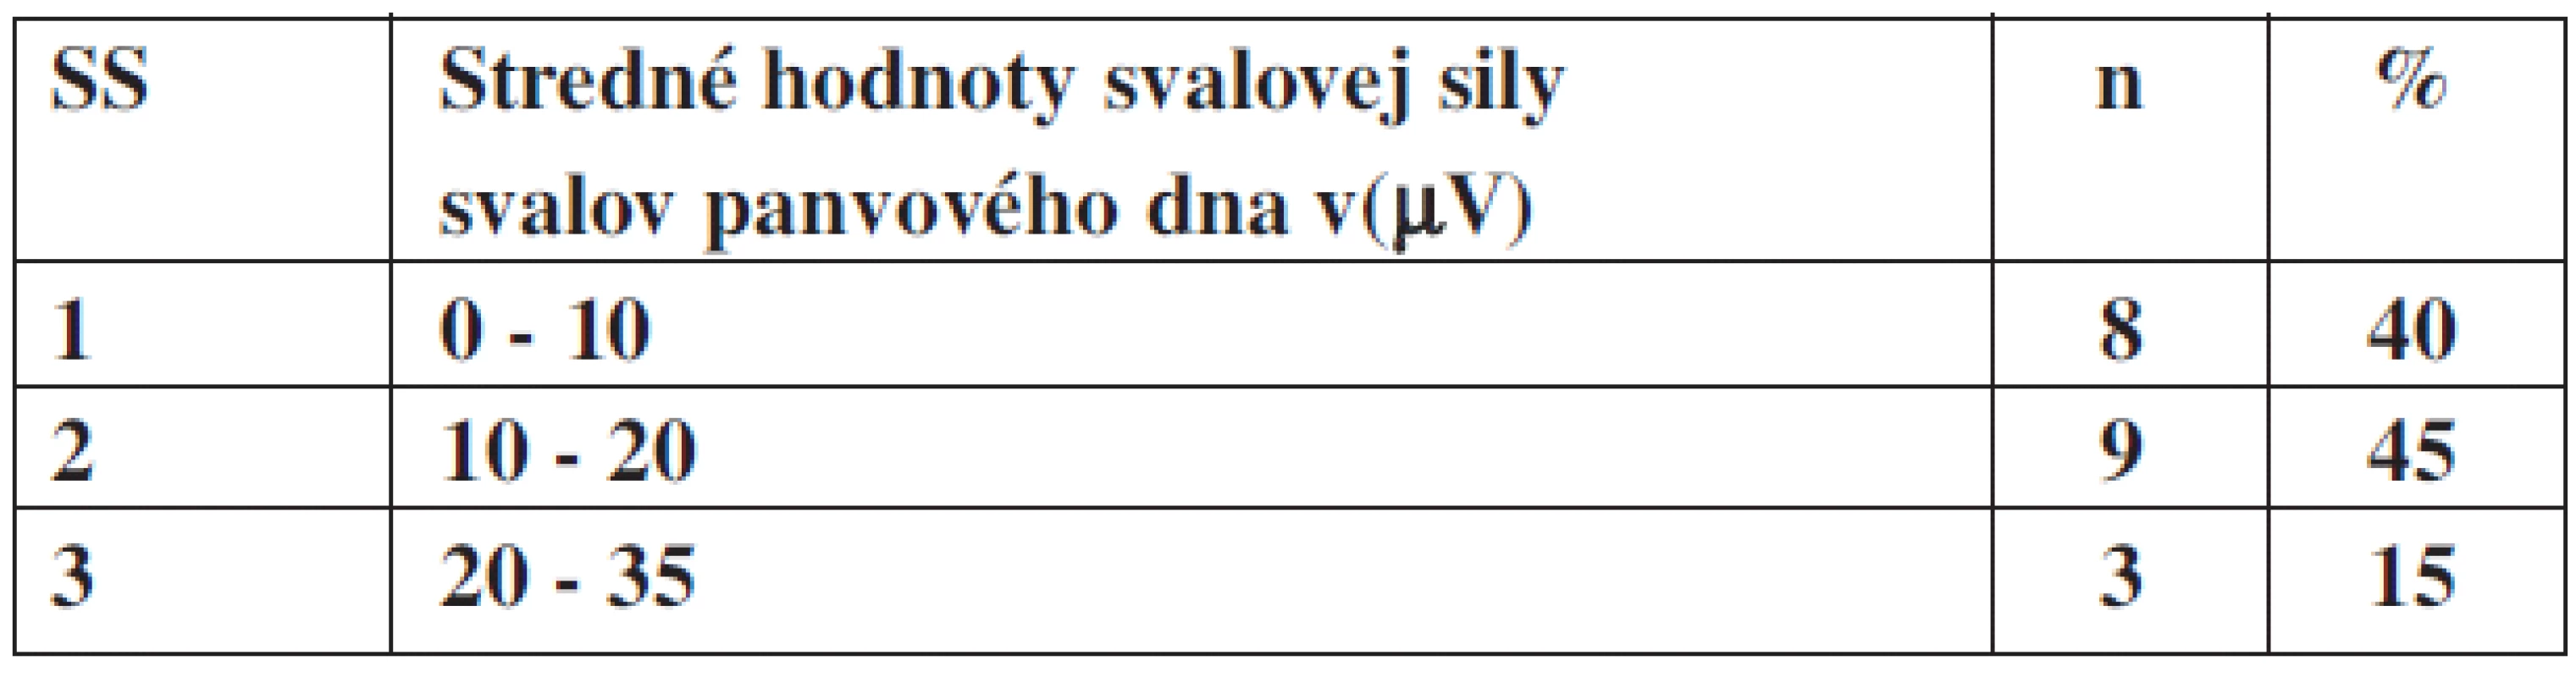 Stredné hodnoty svalovej sily v(μV) u svalov panvového dna v percentuálnom zastúpení u pacientok bez inkontinencie.